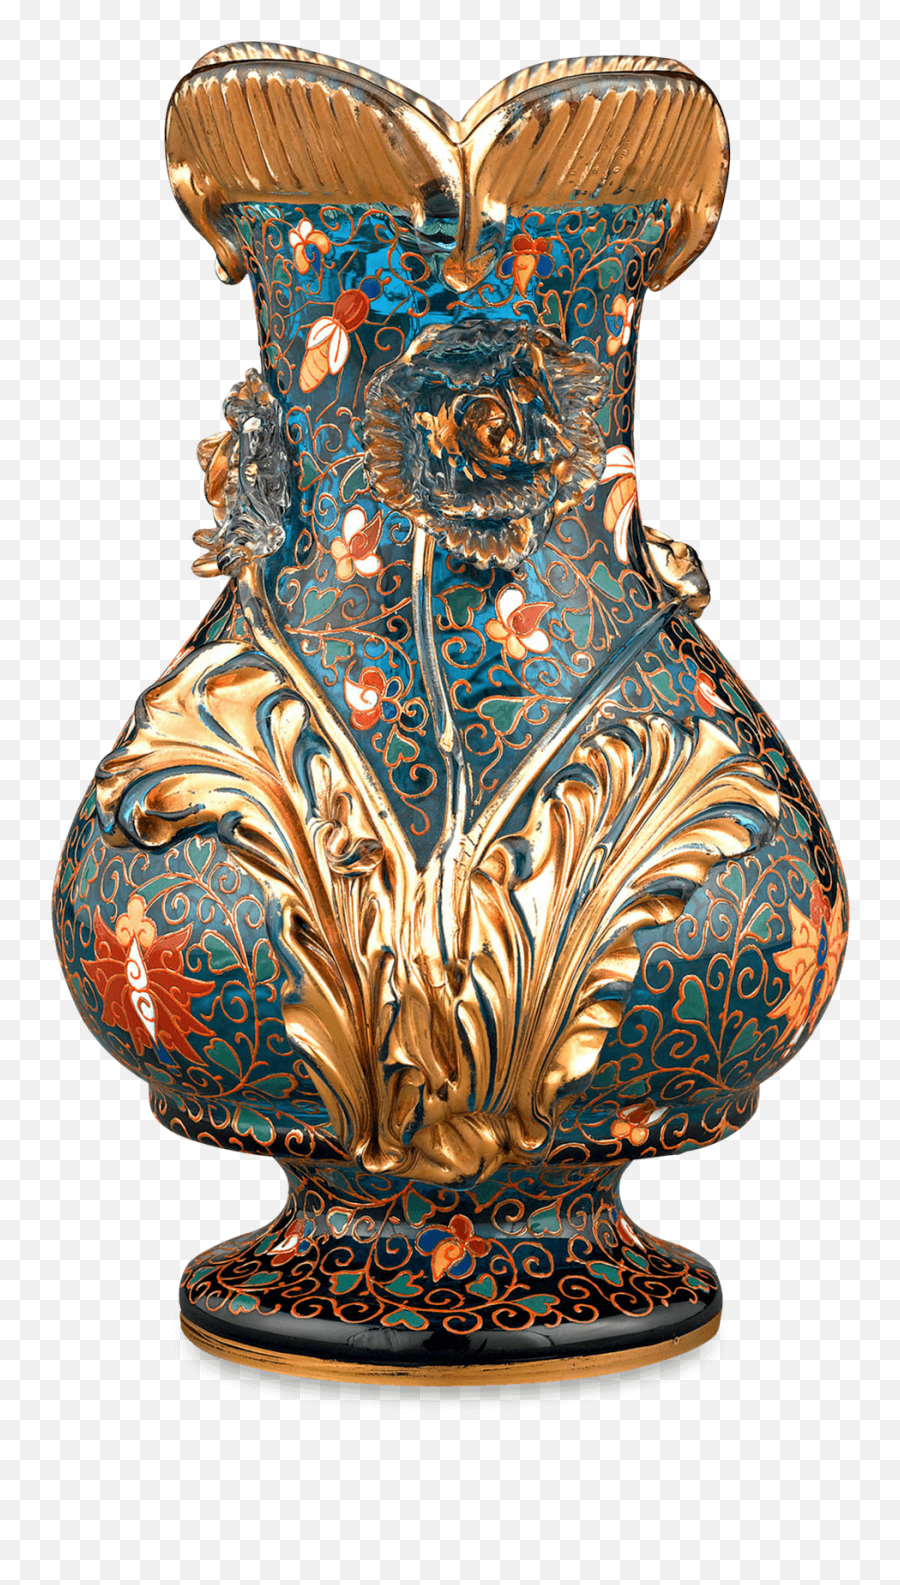 Vase - Persian Glass Vase Transparent Background Png,Vase Png